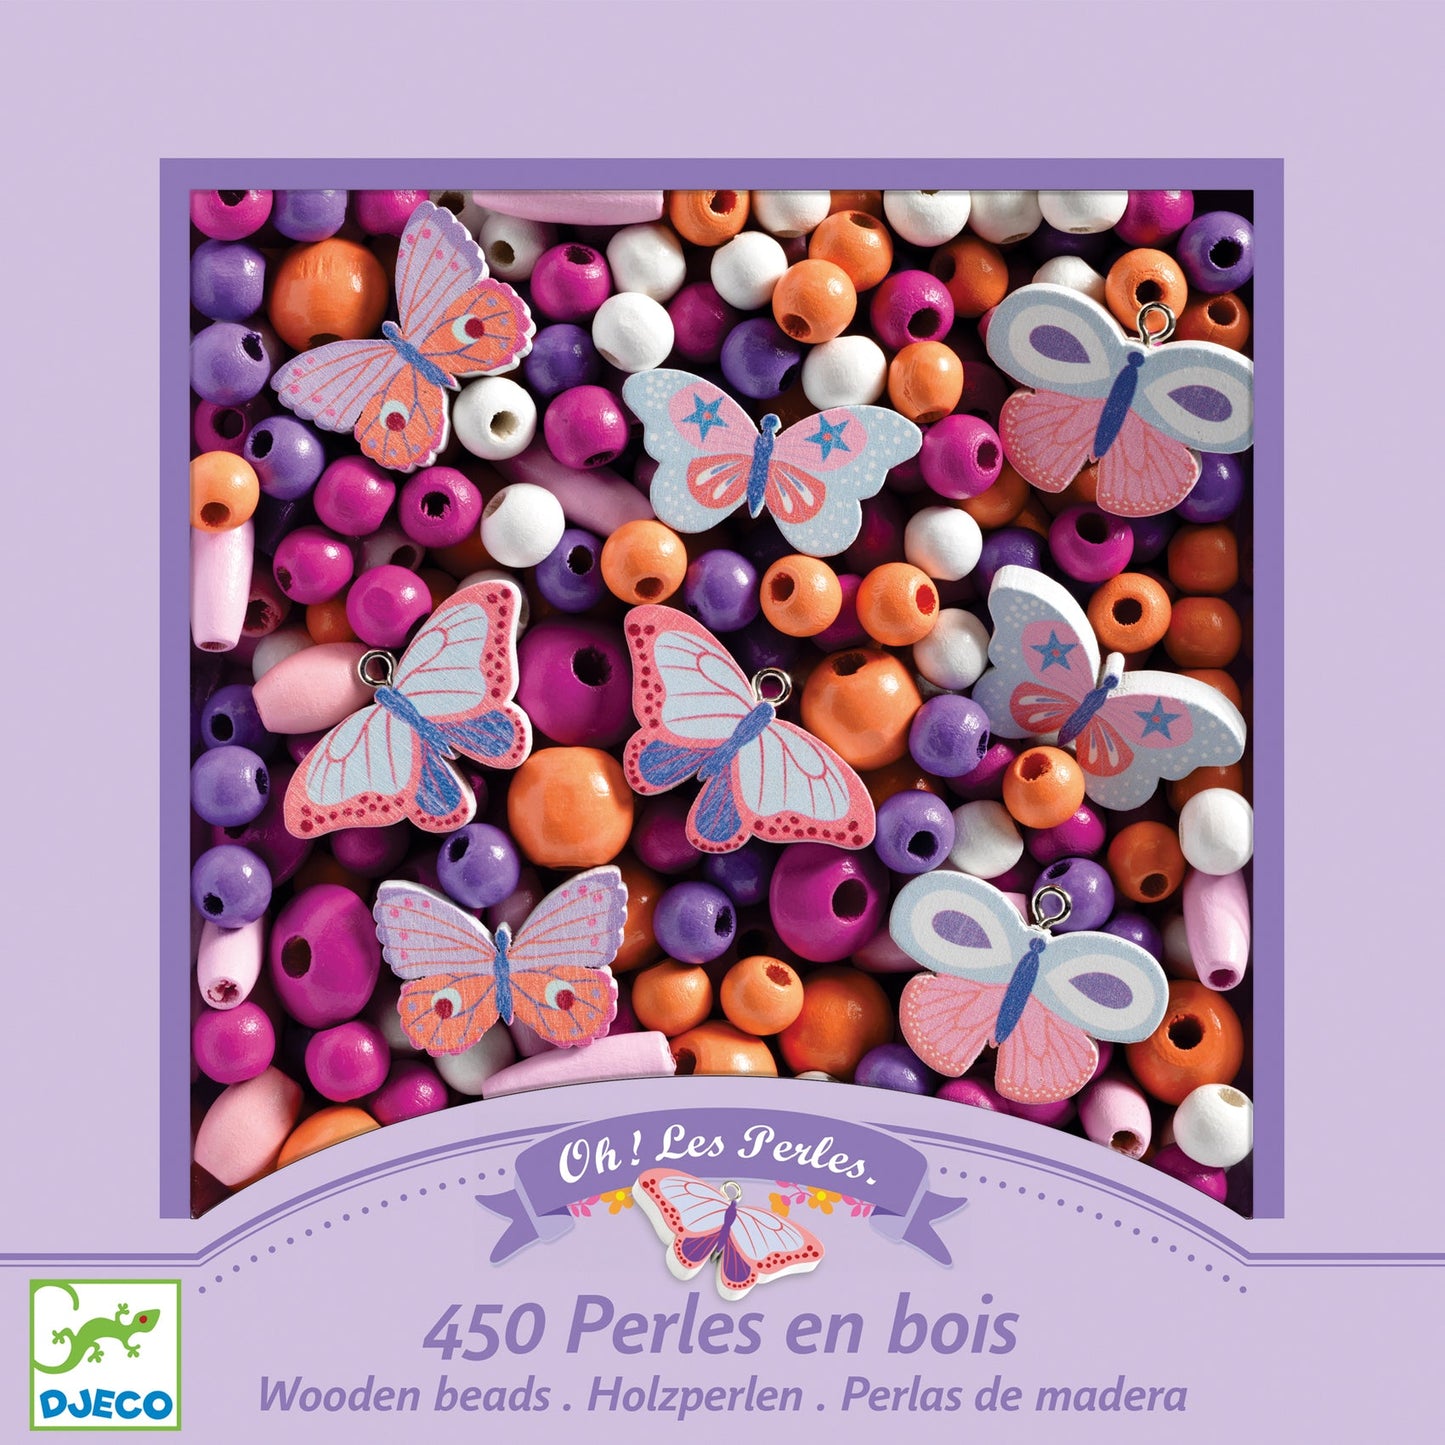 Perles en bois | Papillons-Djeco-Super Châtaigne-Création & Fabrication : Product type